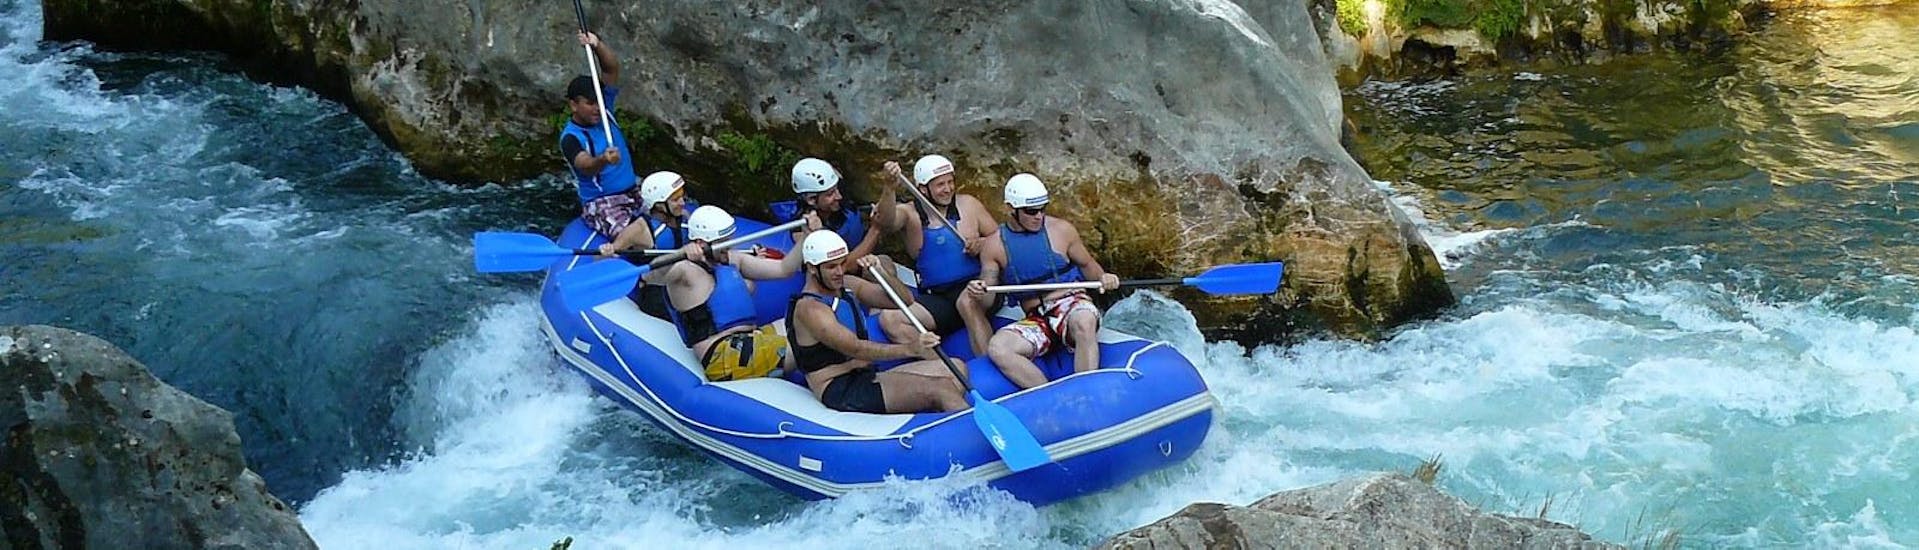 Un groupe de rafting s'amuse à pagayer sur les eaux agitées de la rivière Cetina lors de leur circuit de rafting "Classic" sous la direction d'un instructeur expérimenté de Croatia Rafting.